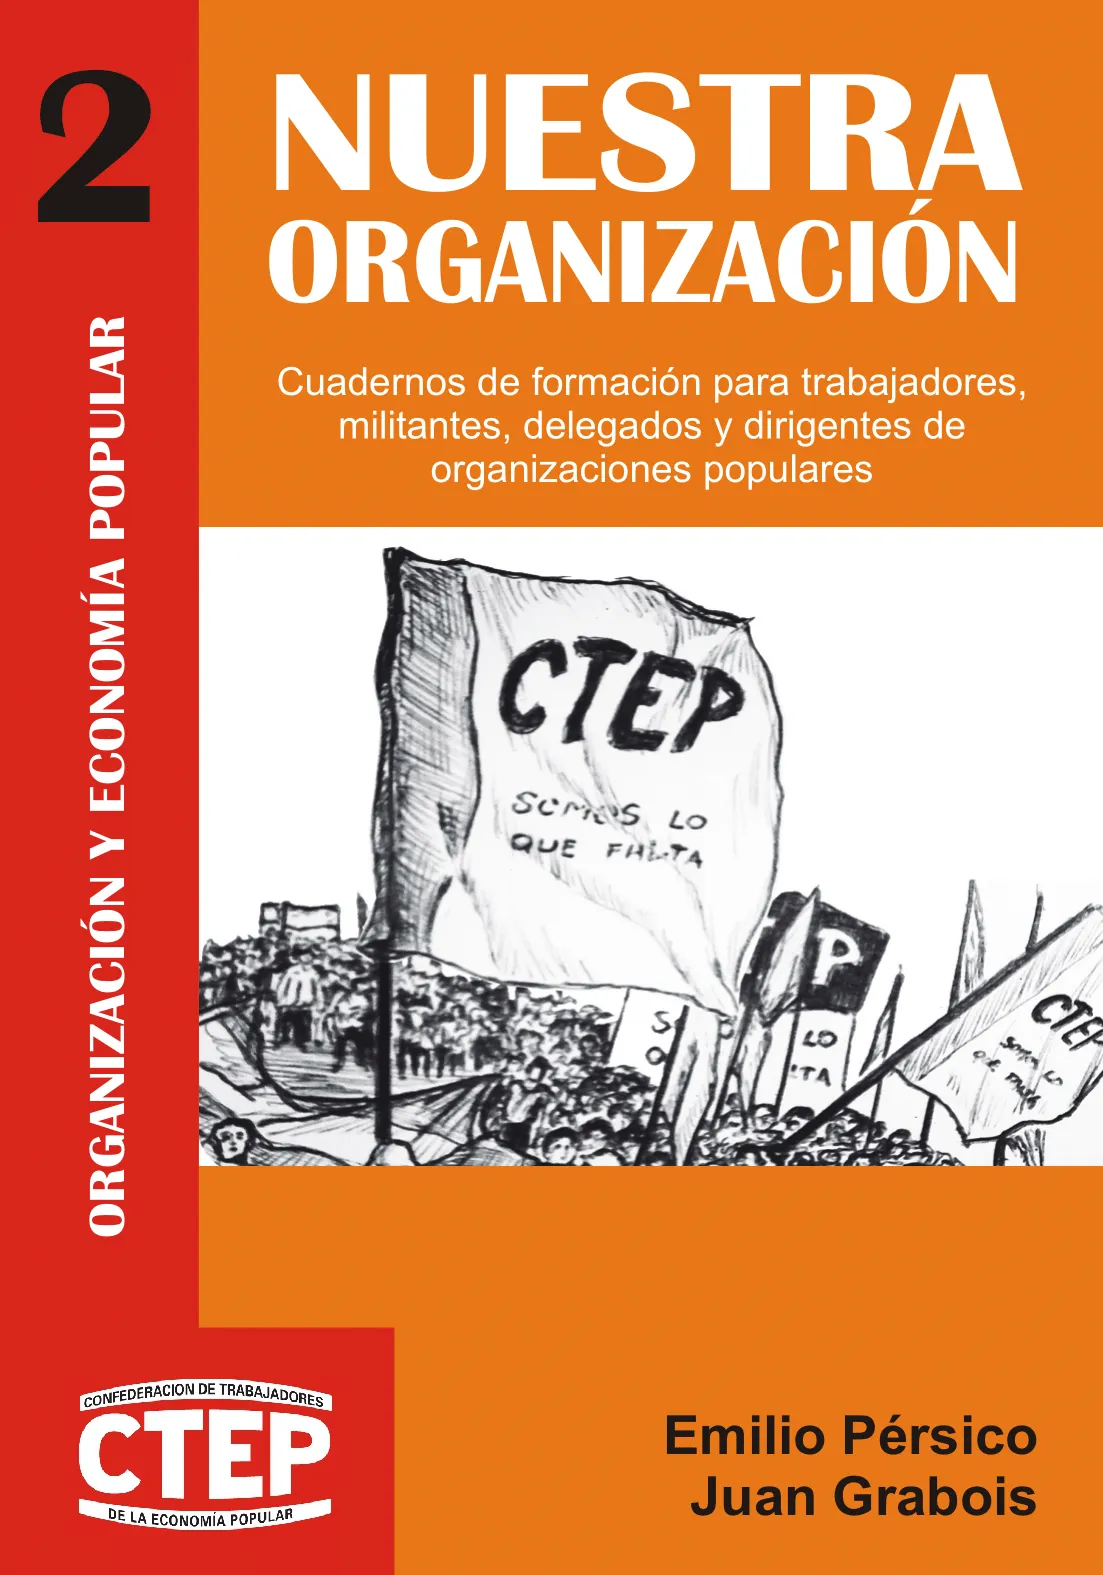 CTEP - Nuestra organización (2014)